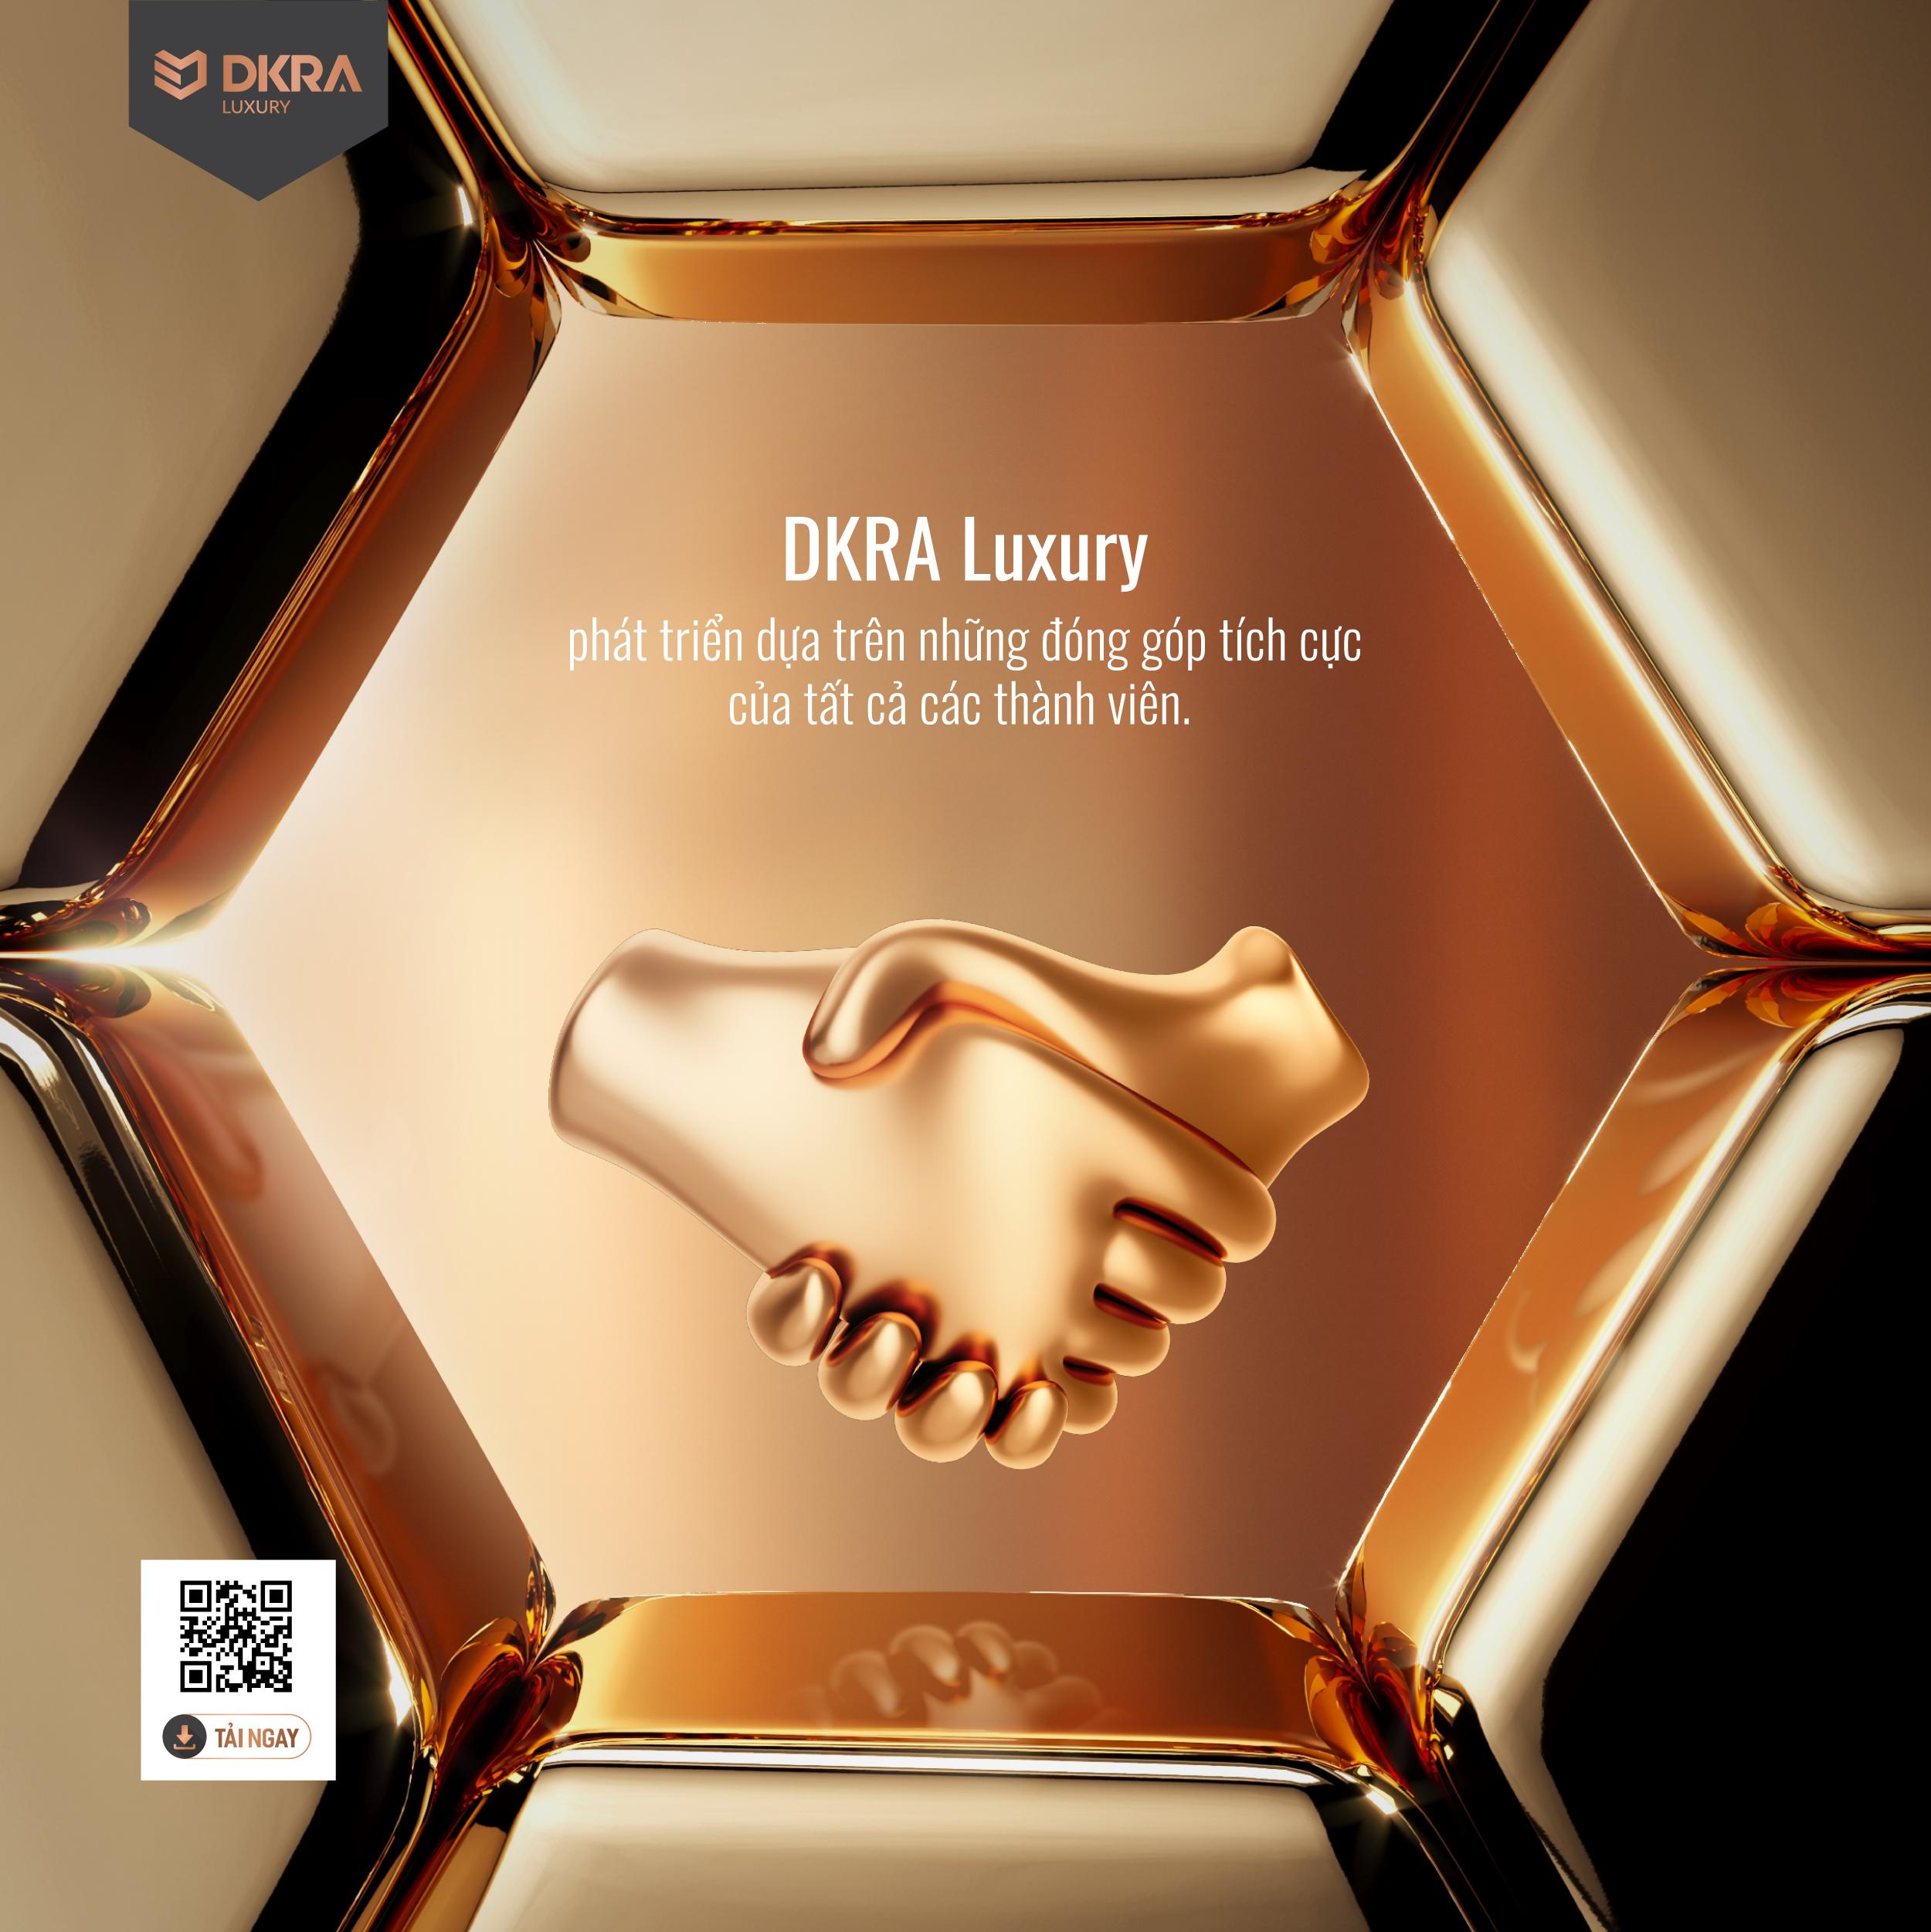 DKRA Luxury phát triển dựa trên những đóng góp tích cực của tất cả các thành viên